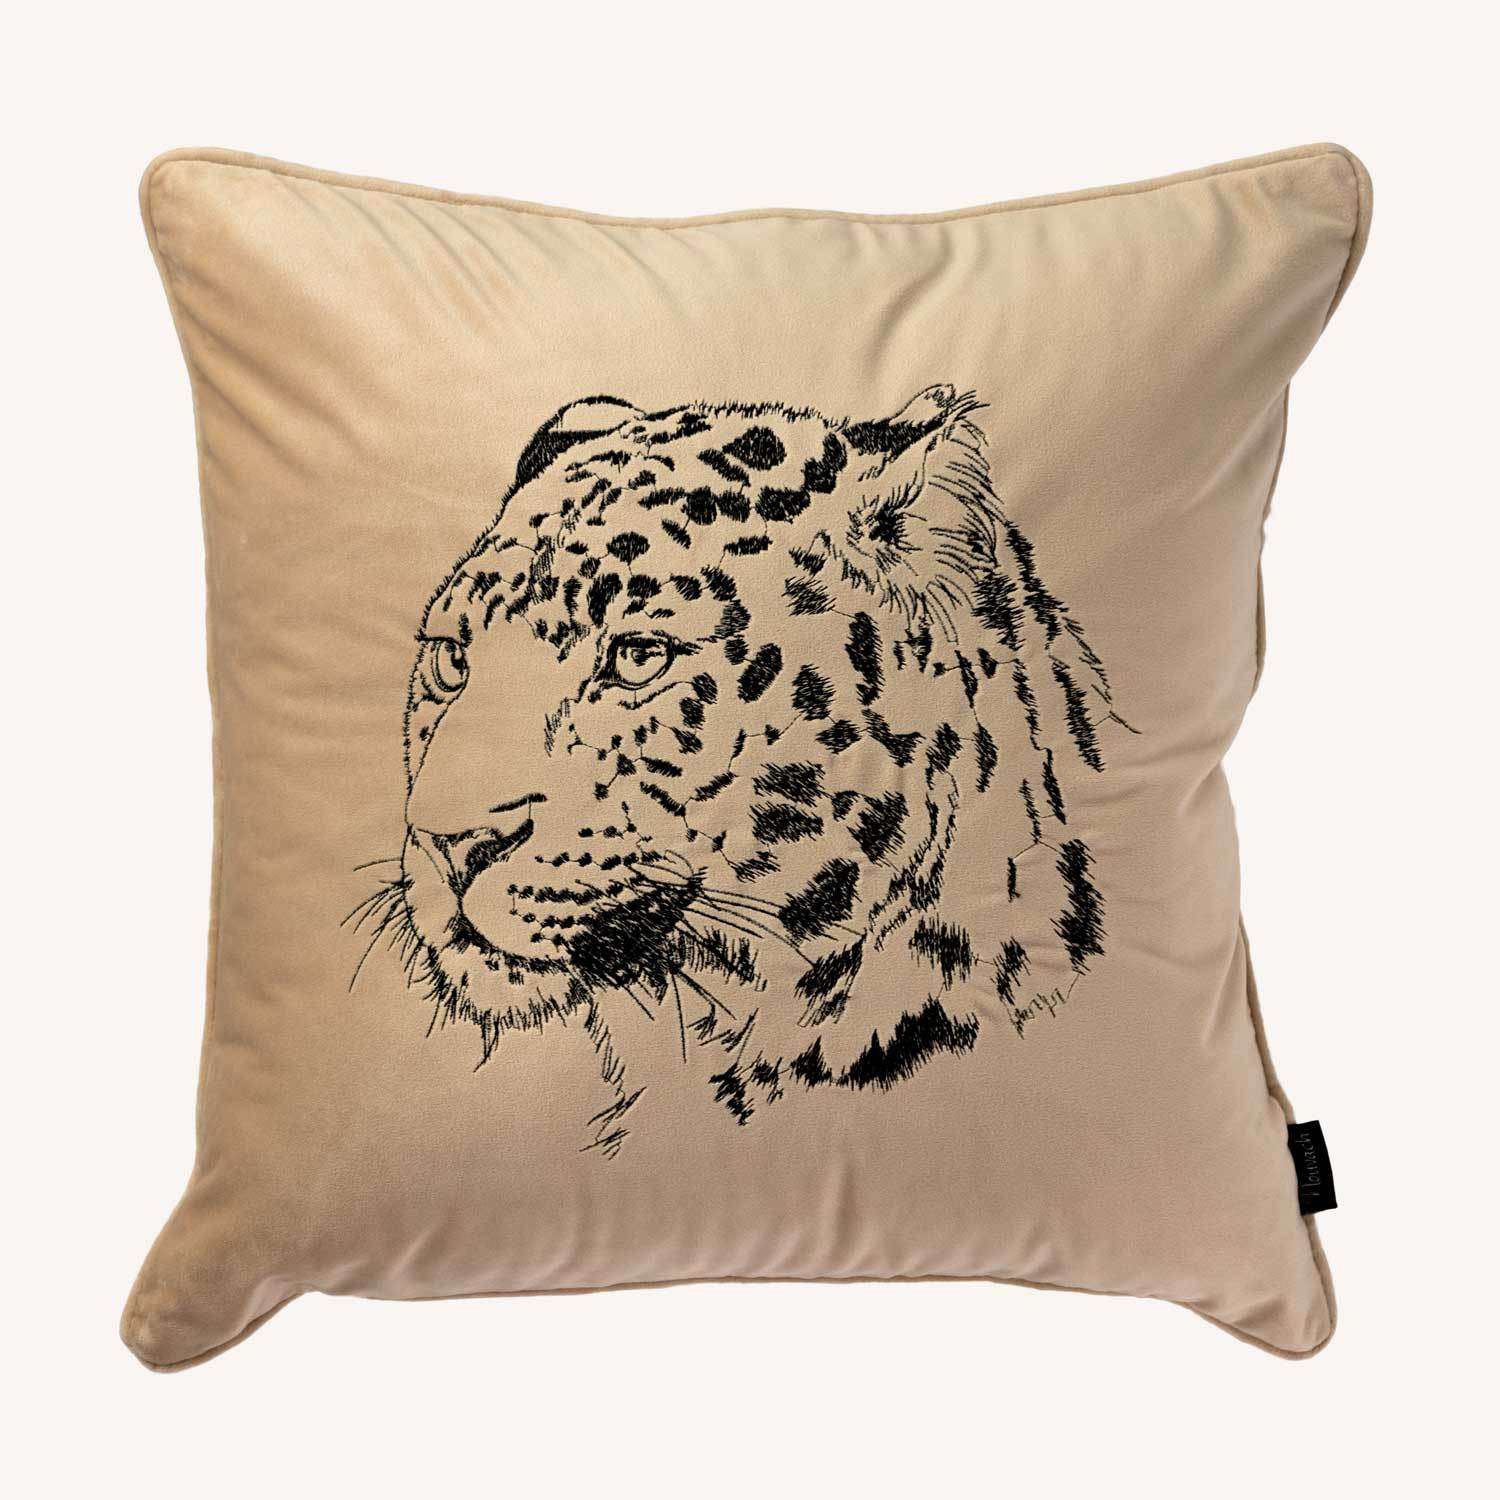 mörk beige kuddfodral i sammet med motiv på en gepard och storlek 45x45cm